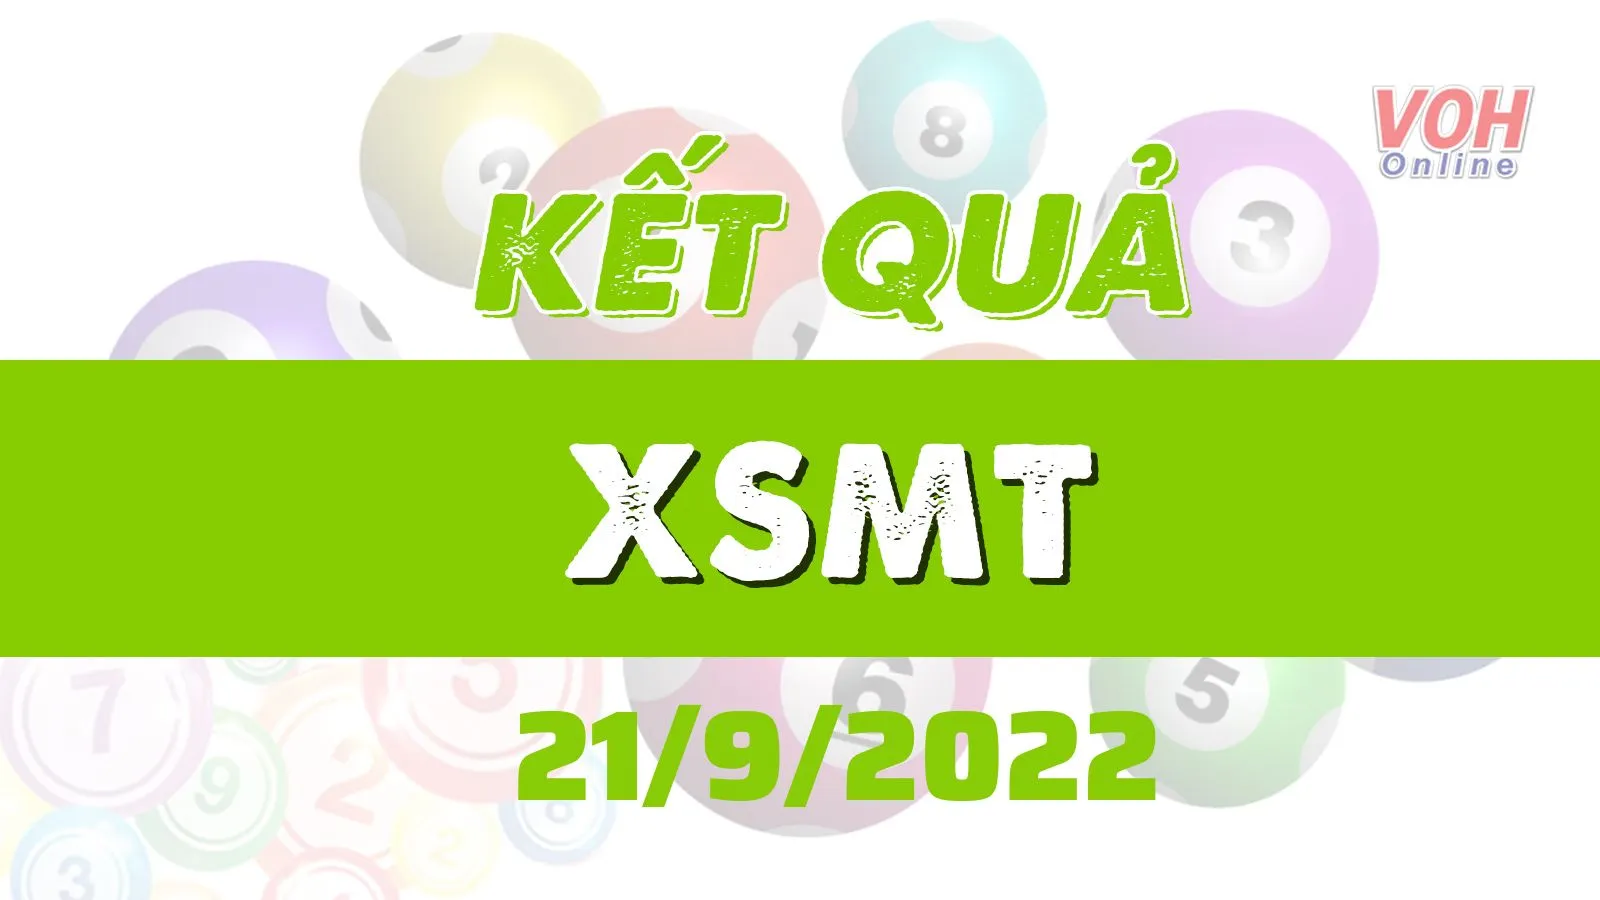 XSMT 21/9, Trực tiếp xổ số miền Trung hôm nay 21/9/2022 - Kết quả xổ số thứ 4 ngày 21 tháng 9